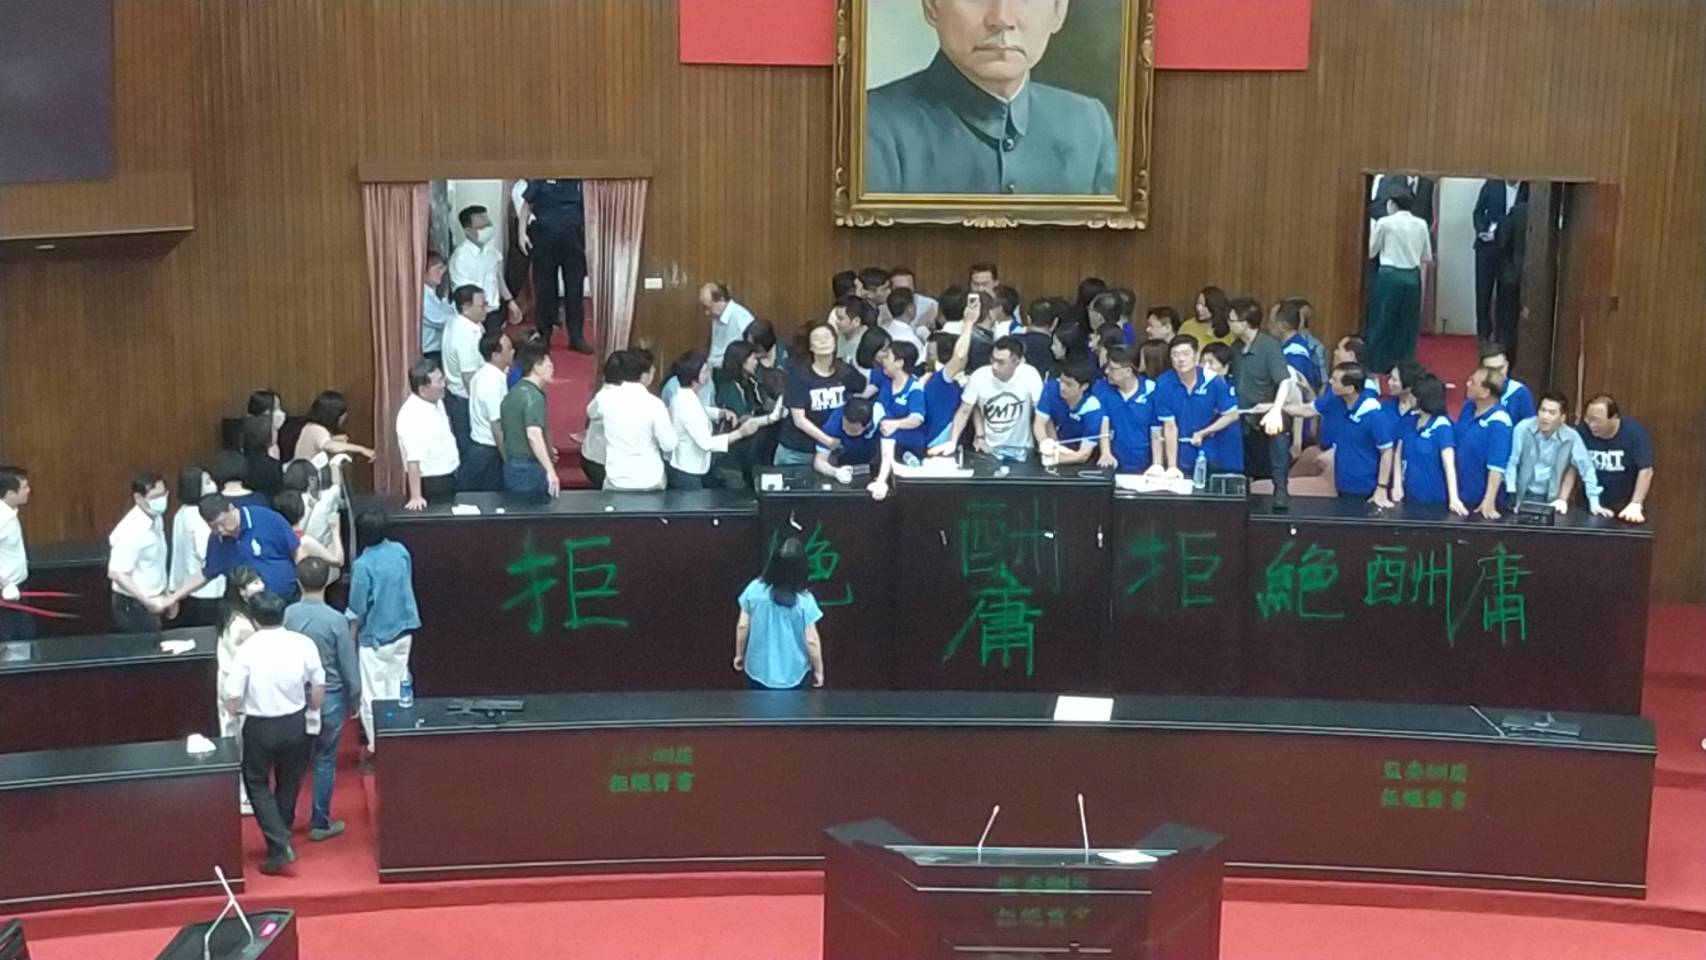 林為洲綁鐵鍊肉身霸占主席台要求撤回名單…民眾黨蔡壁如這麼說！